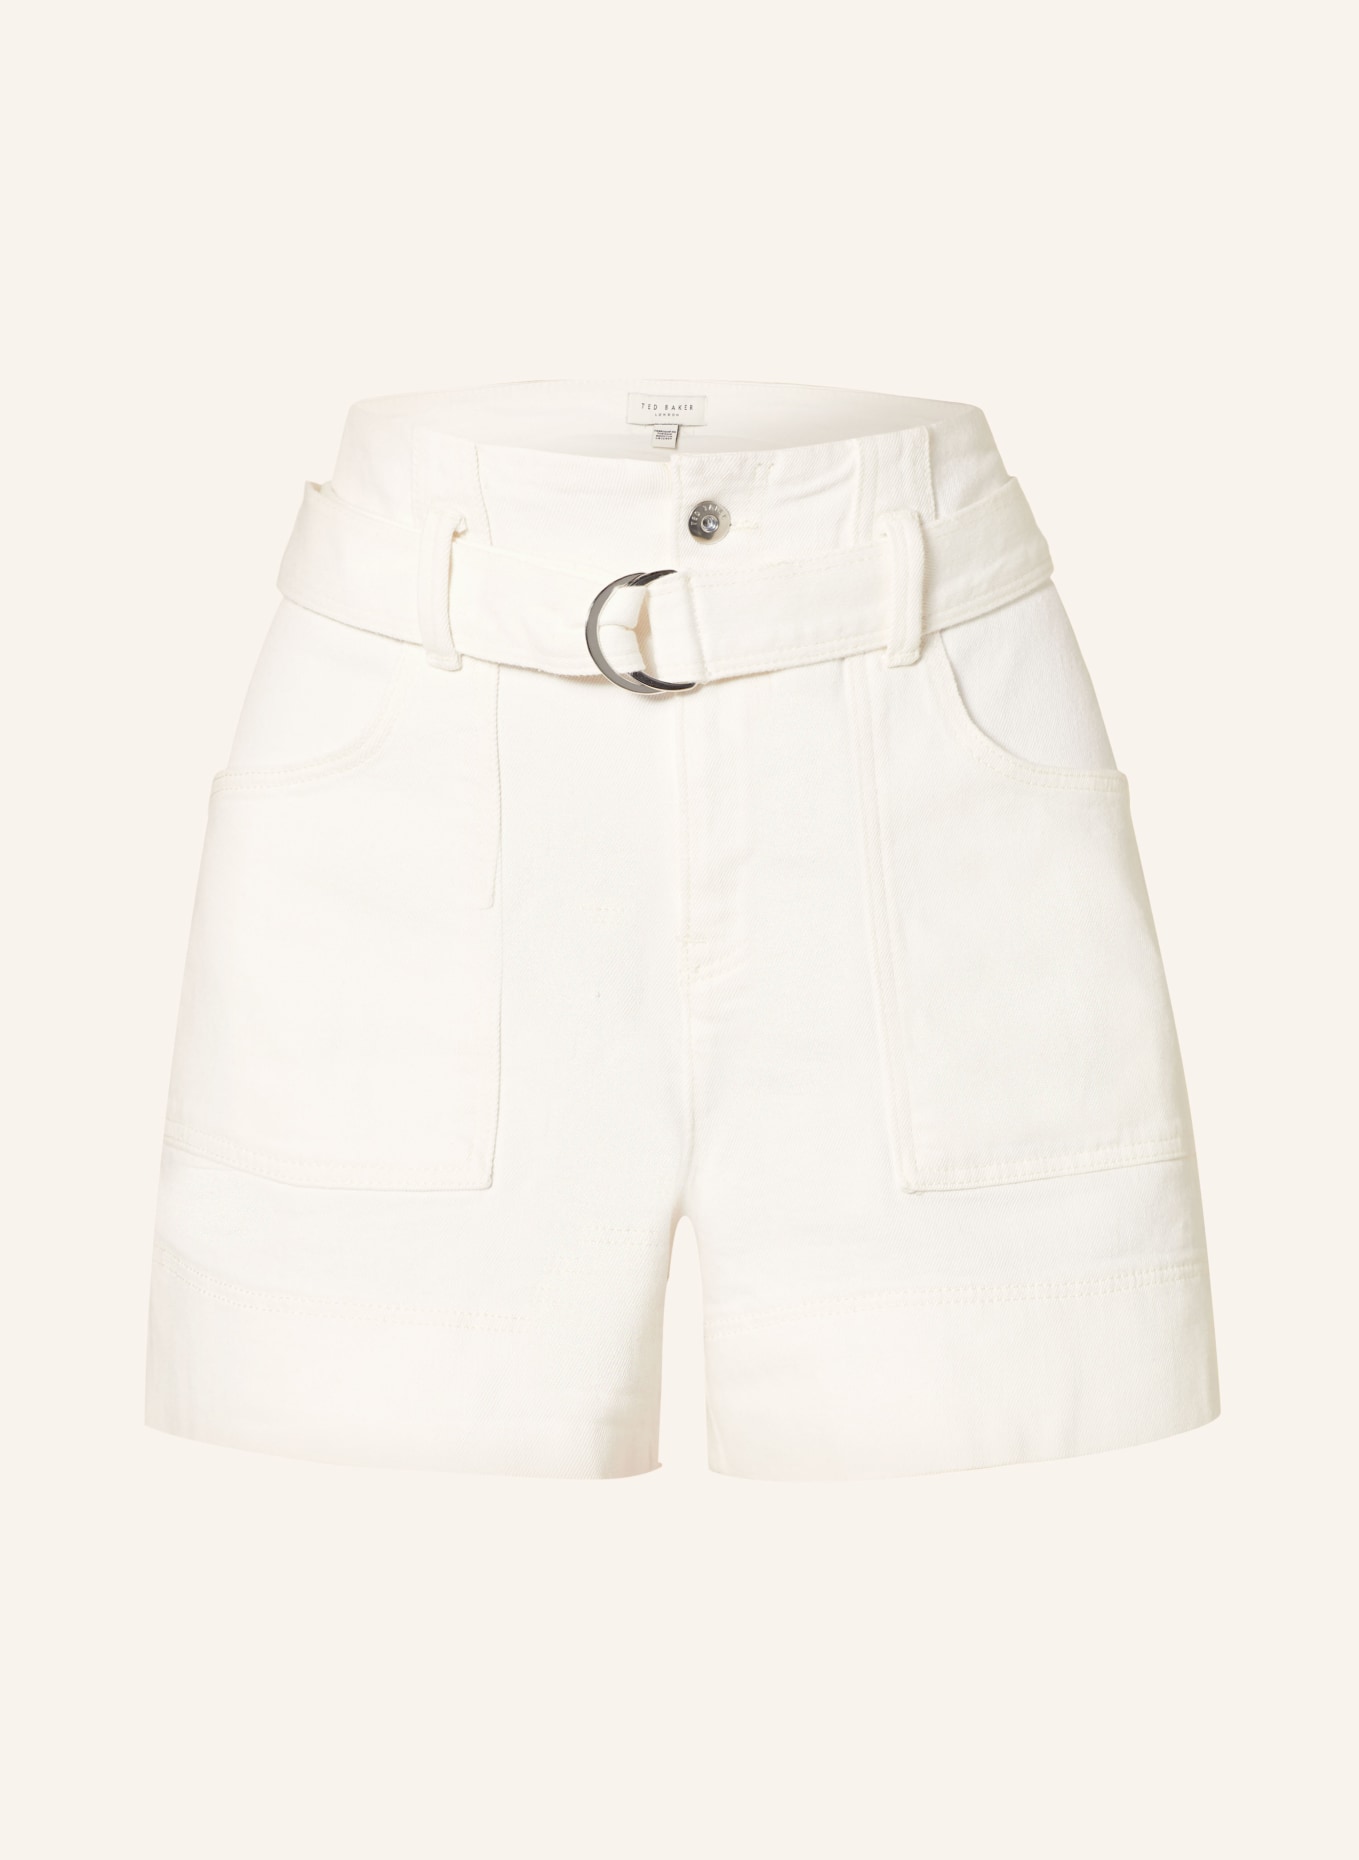 TED BAKER Shorts SELDA, Farbe: WHITE WHITE (Bild 1)